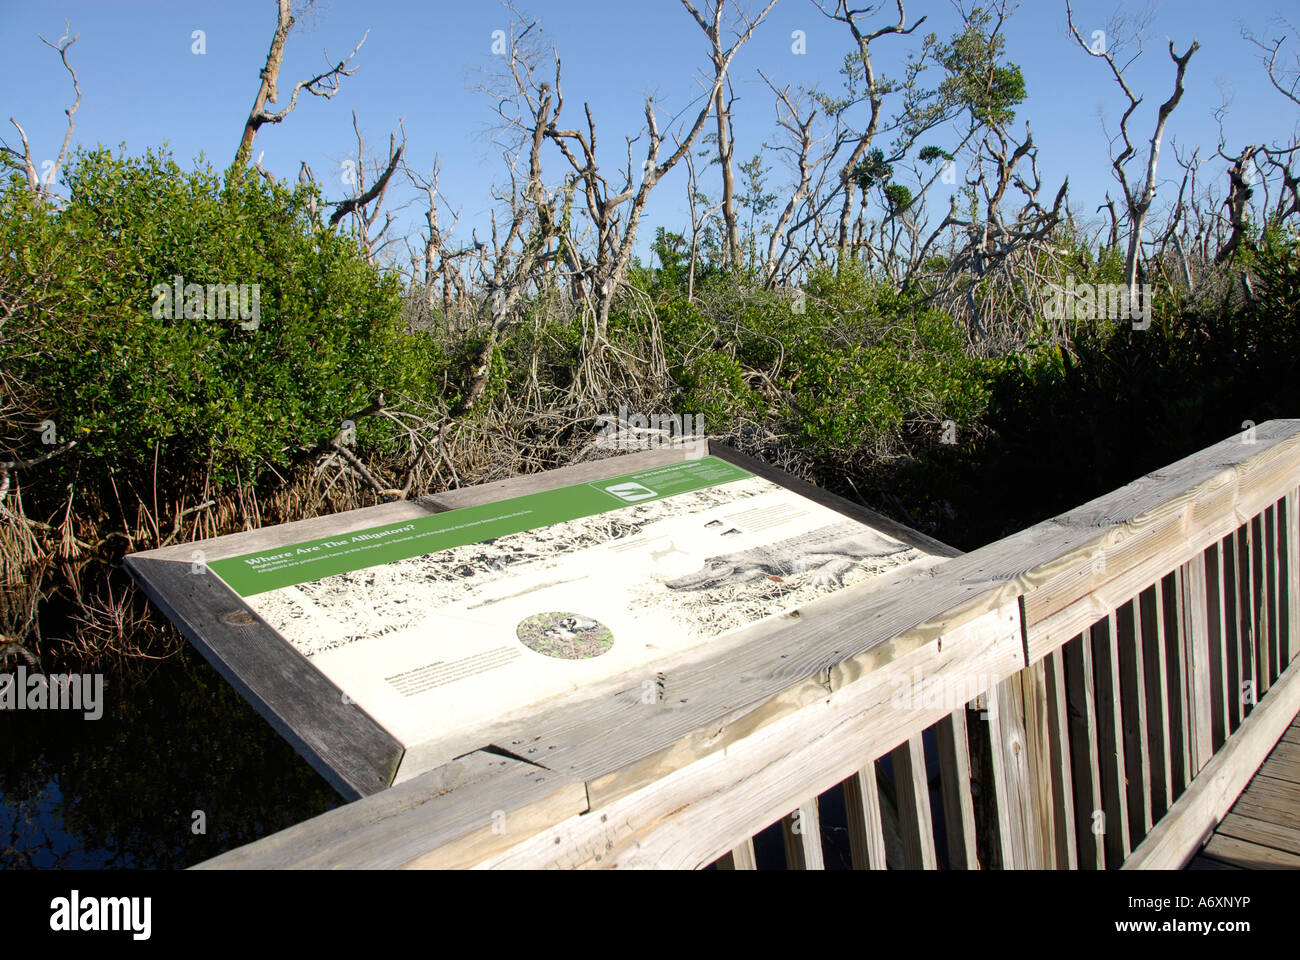 Southwest FL Florida Ft Fort Meyers Myers J N Ding Darling National Wildlife Refuge Sanibel Island Stock Photo